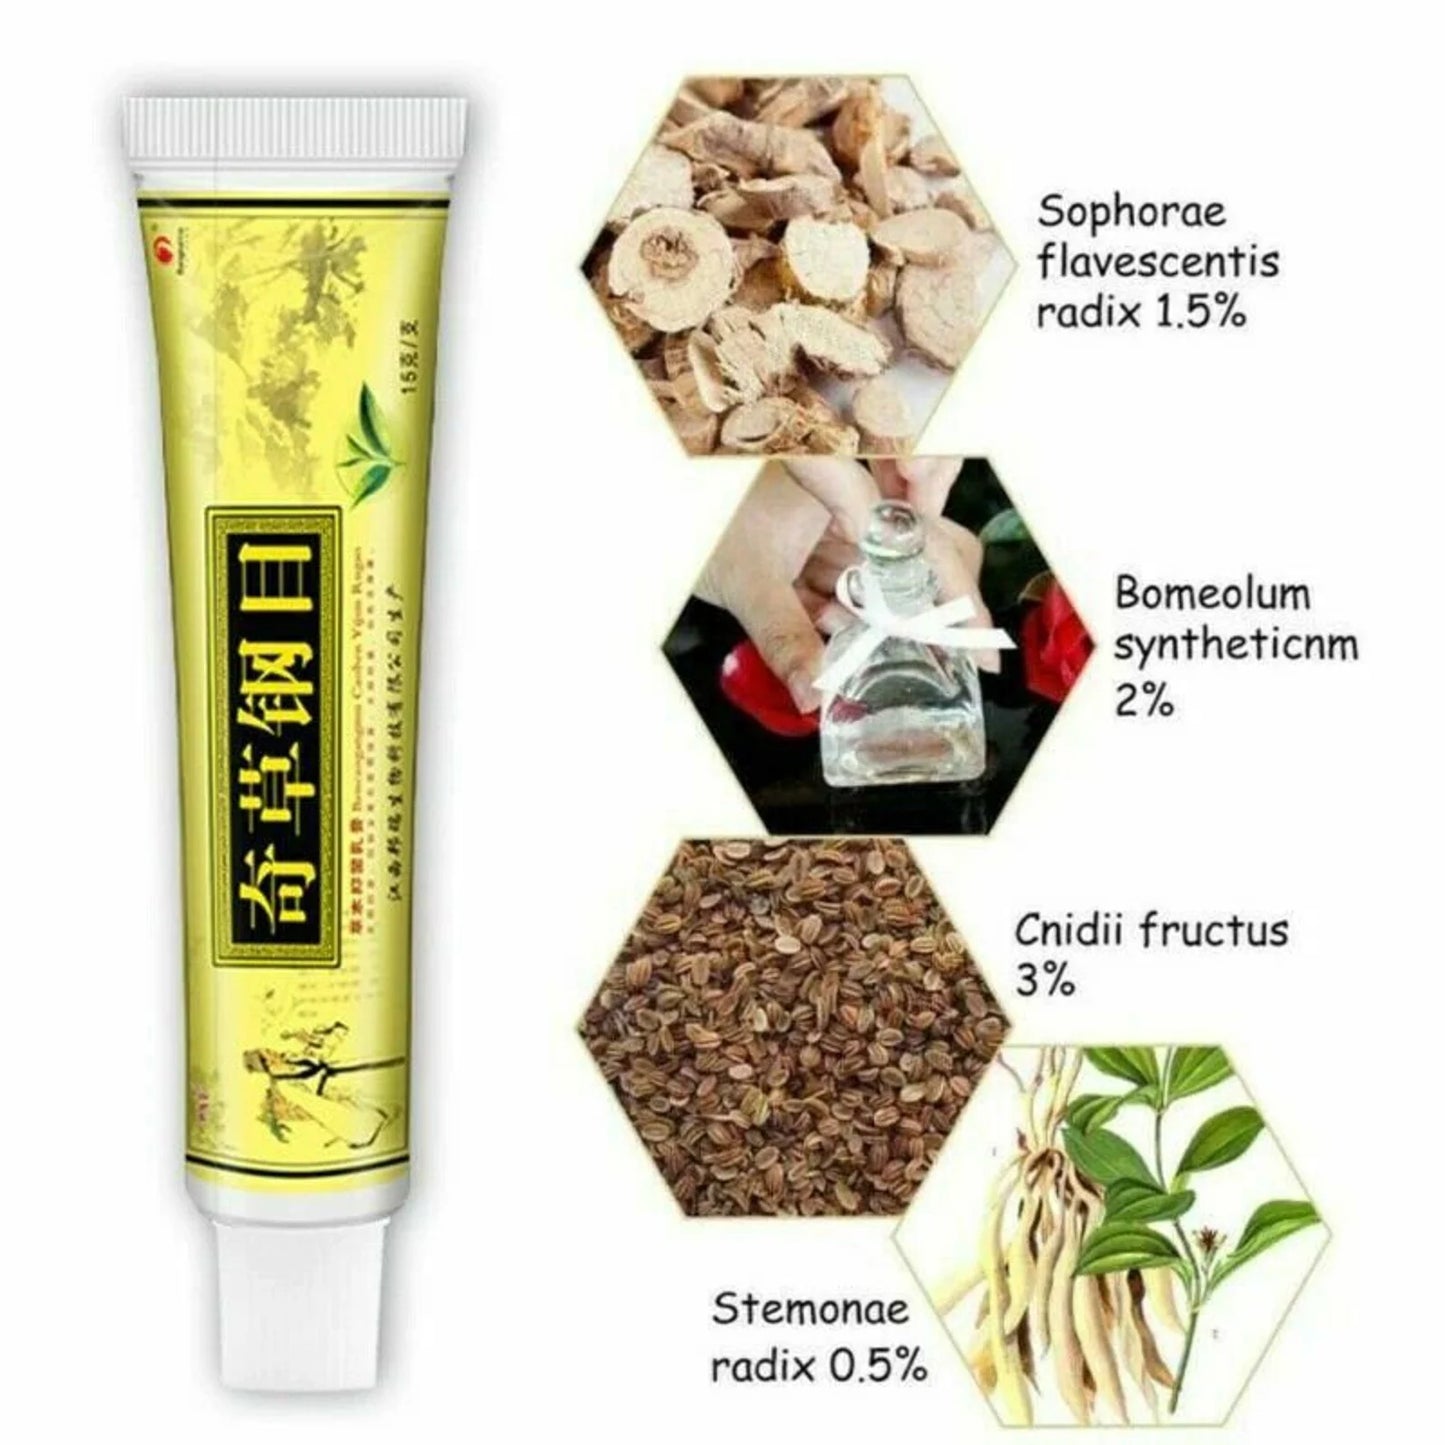 Chinese Herbal Cream - Natural Herbal Psoriasis Cream and Eczema Cream